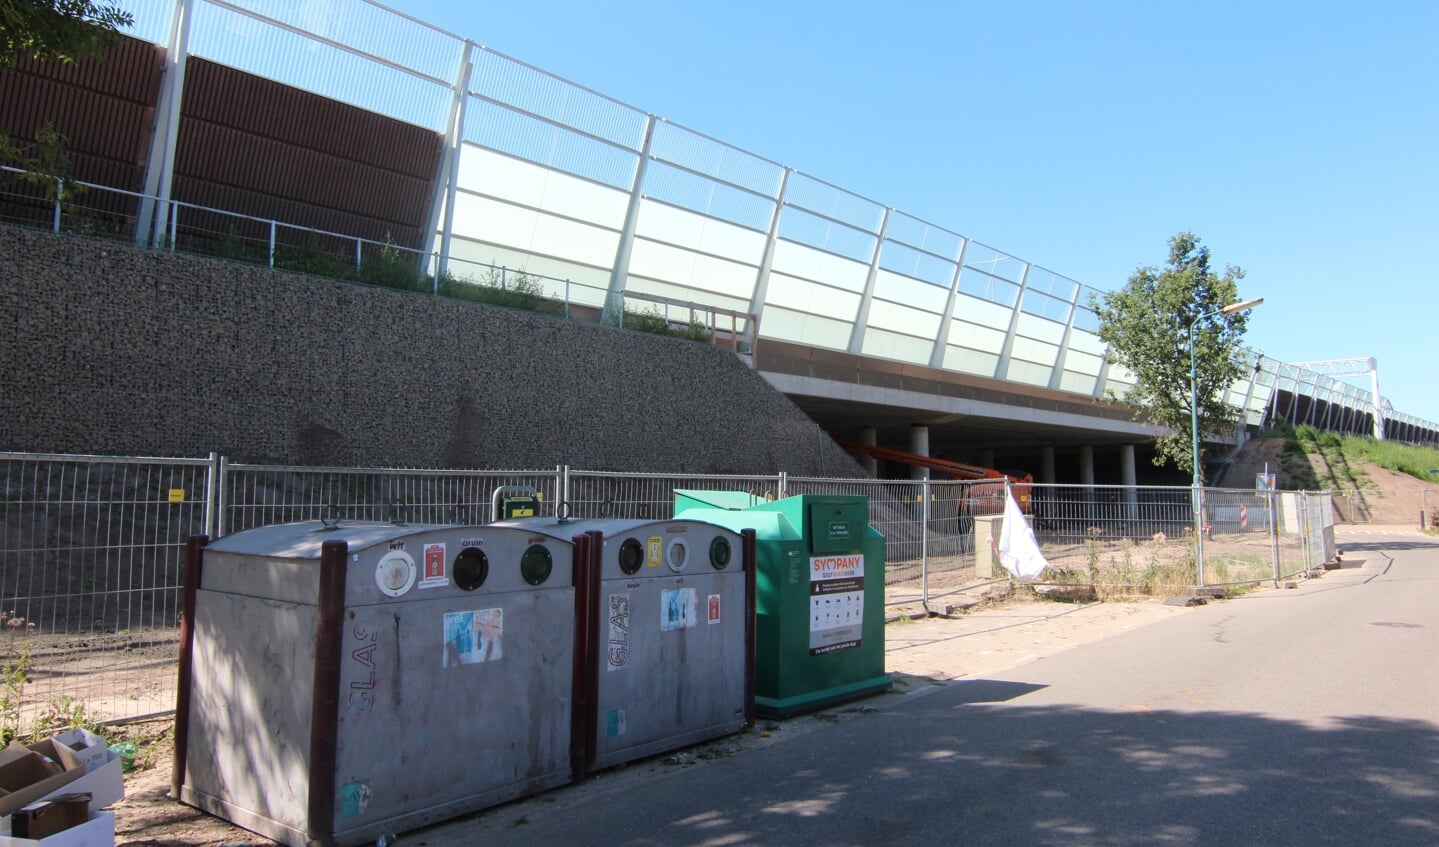 In Hollandsche Rading is het geluidscherm door ruimtegebrek pal naast de weg gezet. De afvalcontainers worden ondergronds geplaatst.